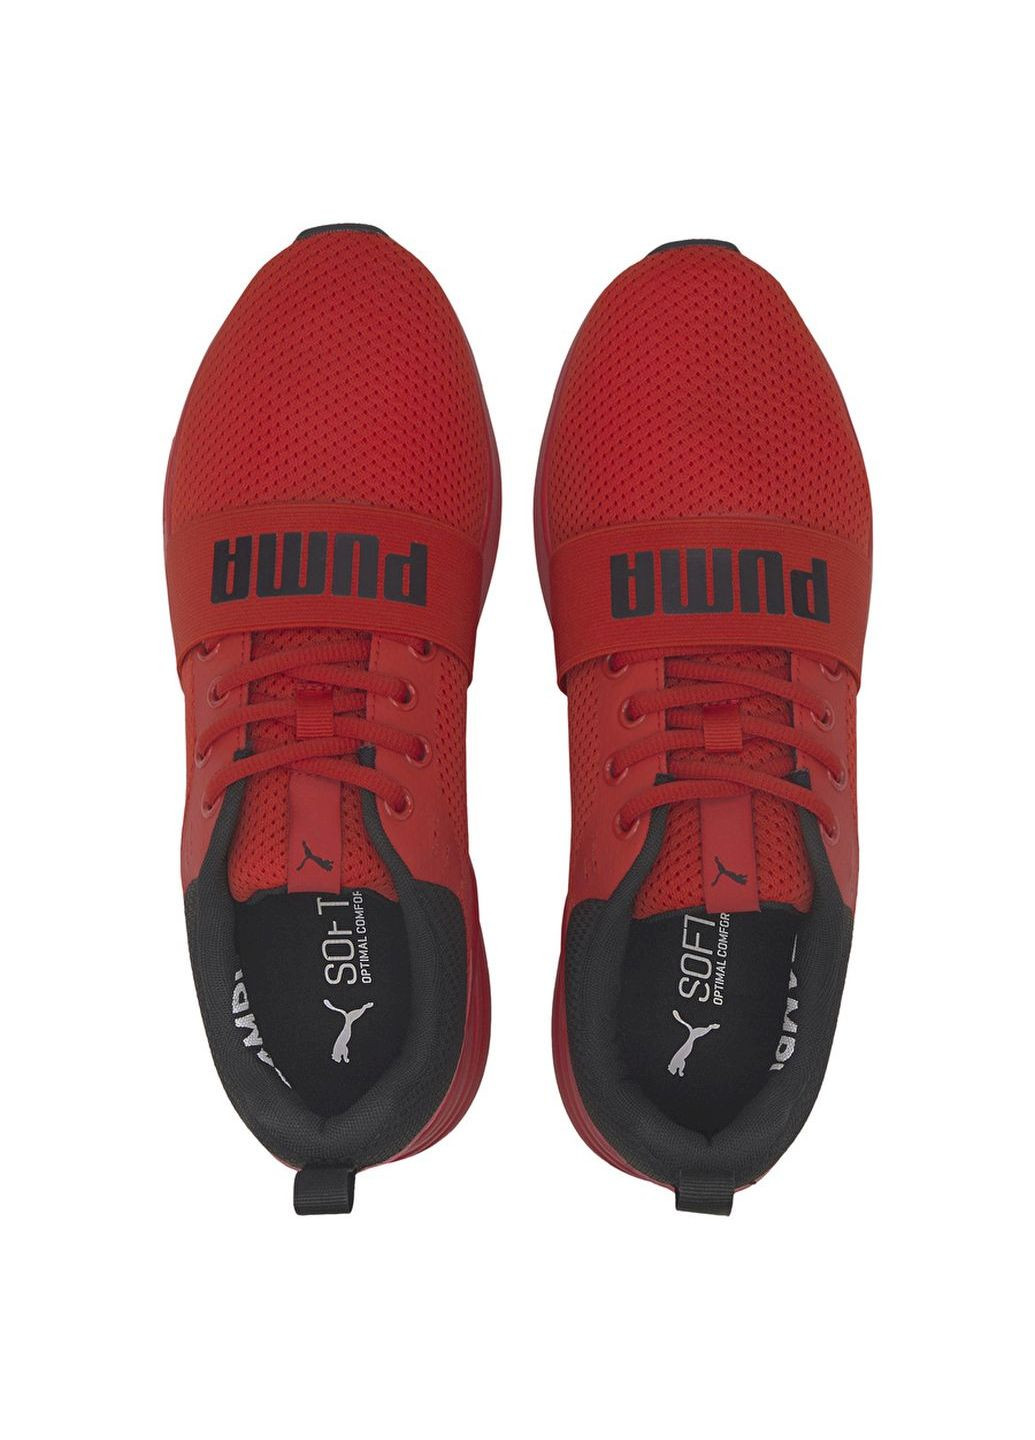 Красные всесезонные кроссовки 37301505 Puma Wired Run